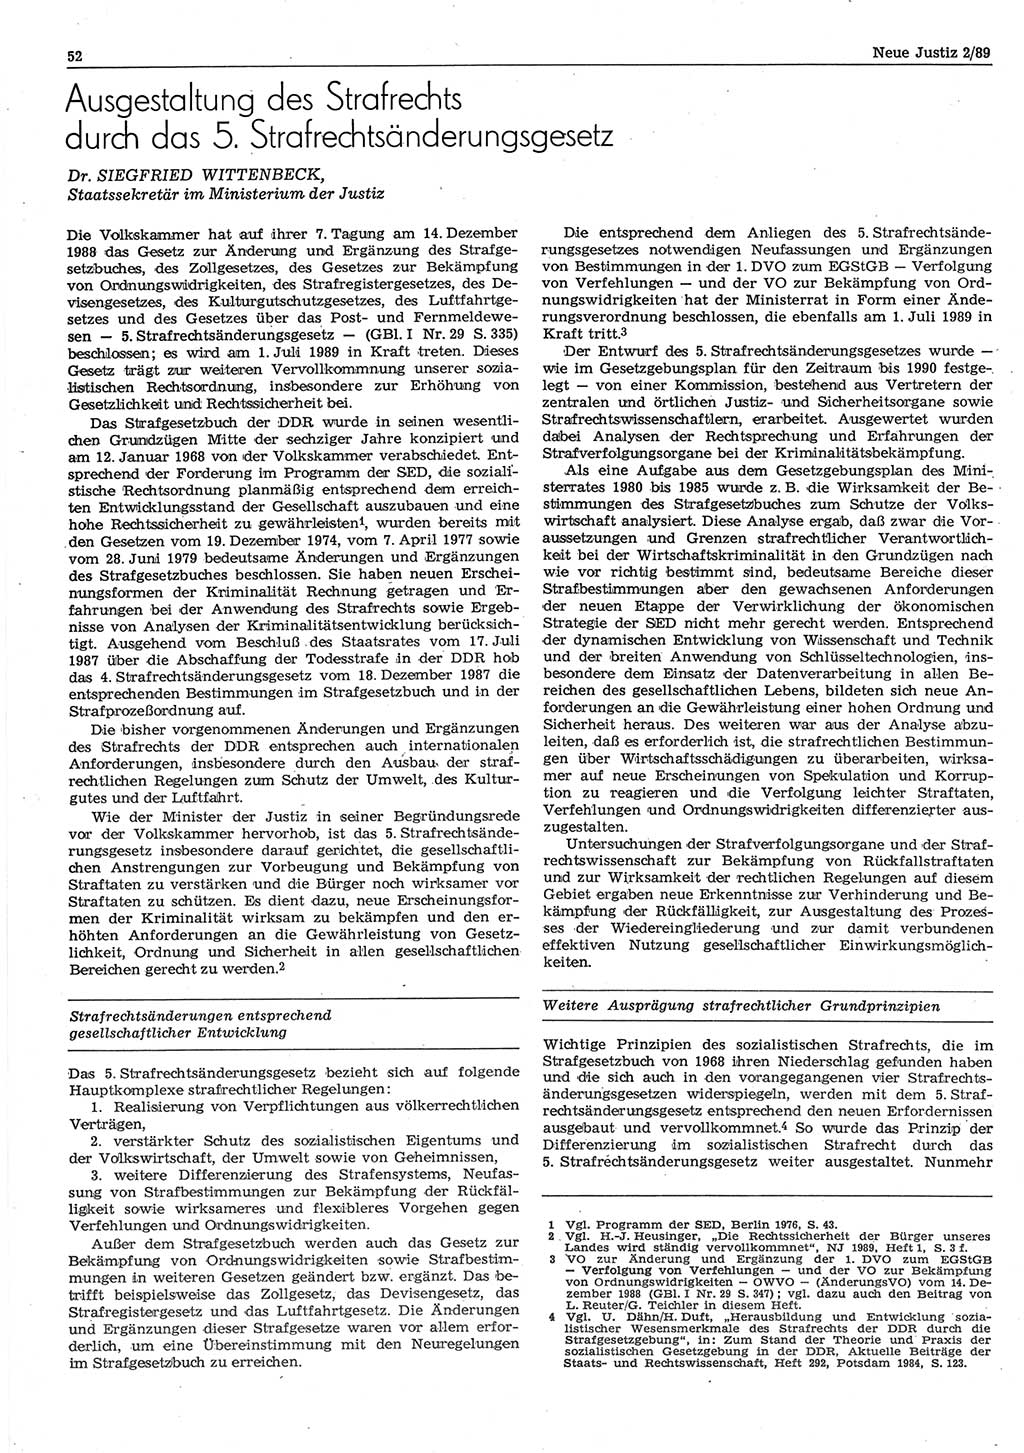 Neue Justiz (NJ), Zeitschrift für sozialistisches Recht und Gesetzlichkeit [Deutsche Demokratische Republik (DDR)], 43. Jahrgang 1989, Seite 52 (NJ DDR 1989, S. 52)